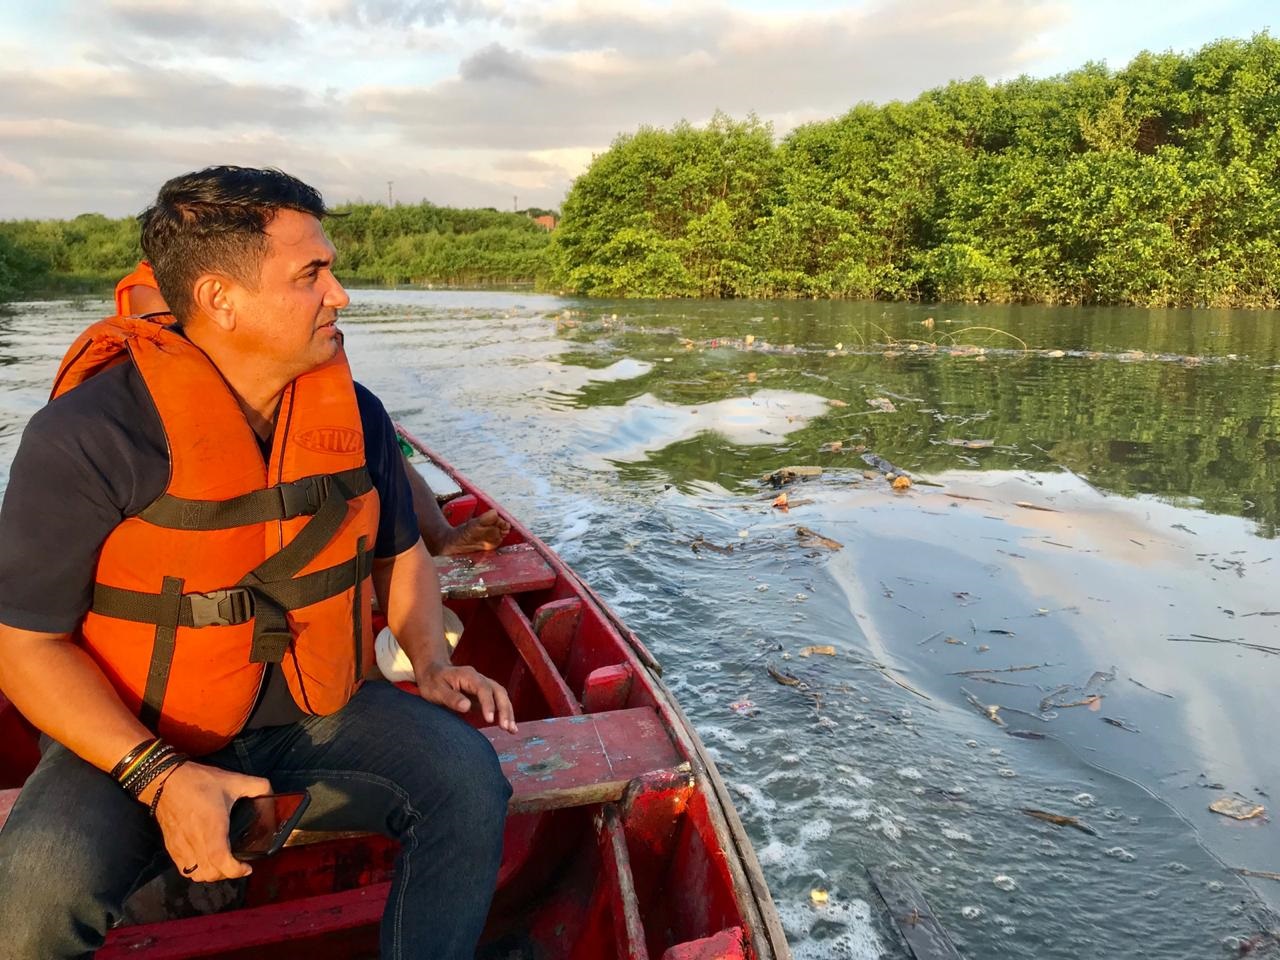 Wellington do Curso denuncia crimes ambientais e poluição nos dois principais rios de São Luís